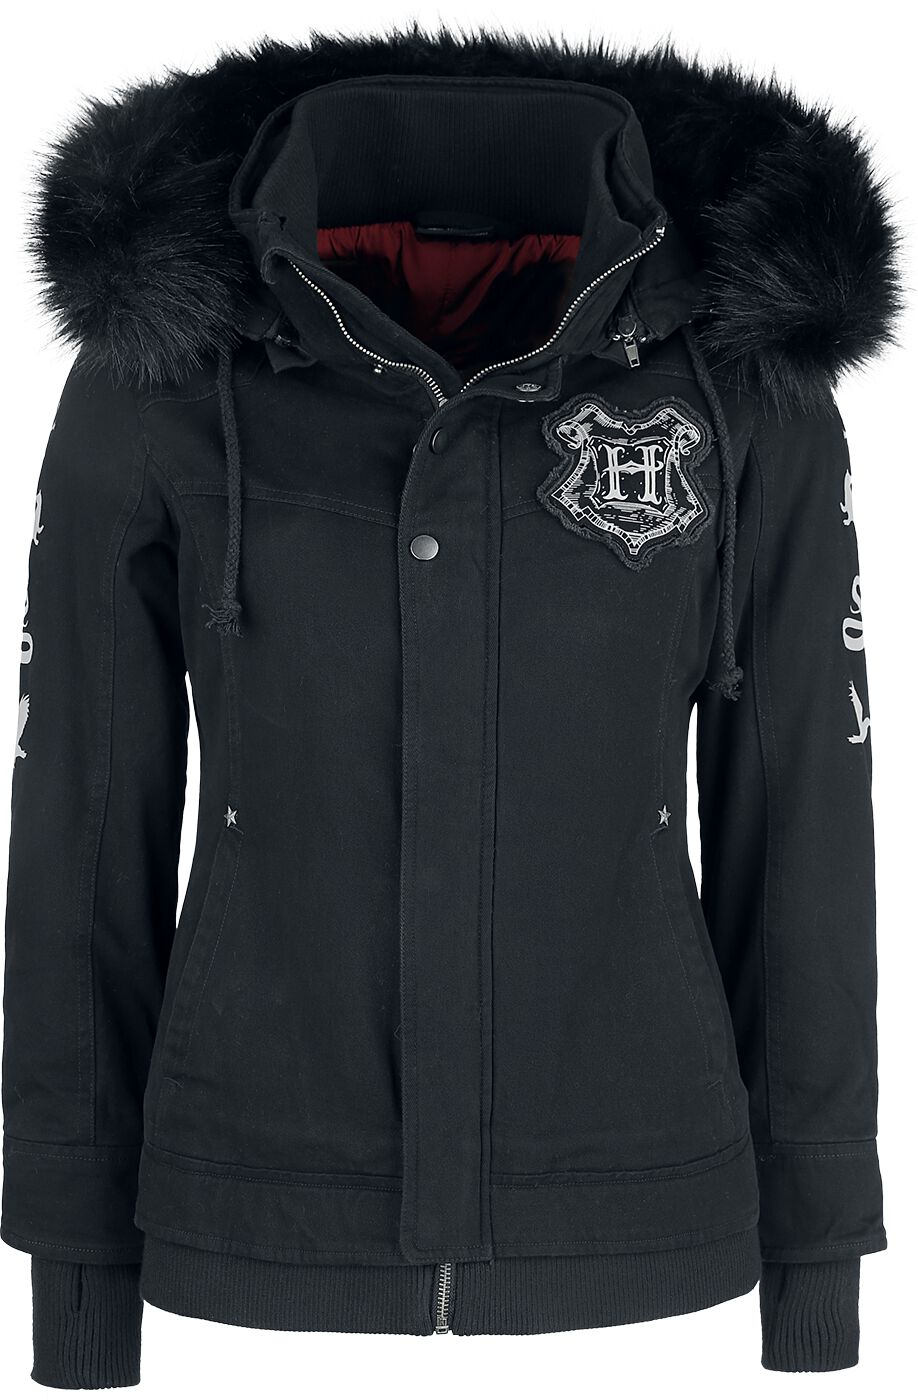 Harry Potter Winterjacke - Hogwarts Crest - XS bis XXL - für Damen - Größe XL - schwarz  - EMP exklusives Merchandise!